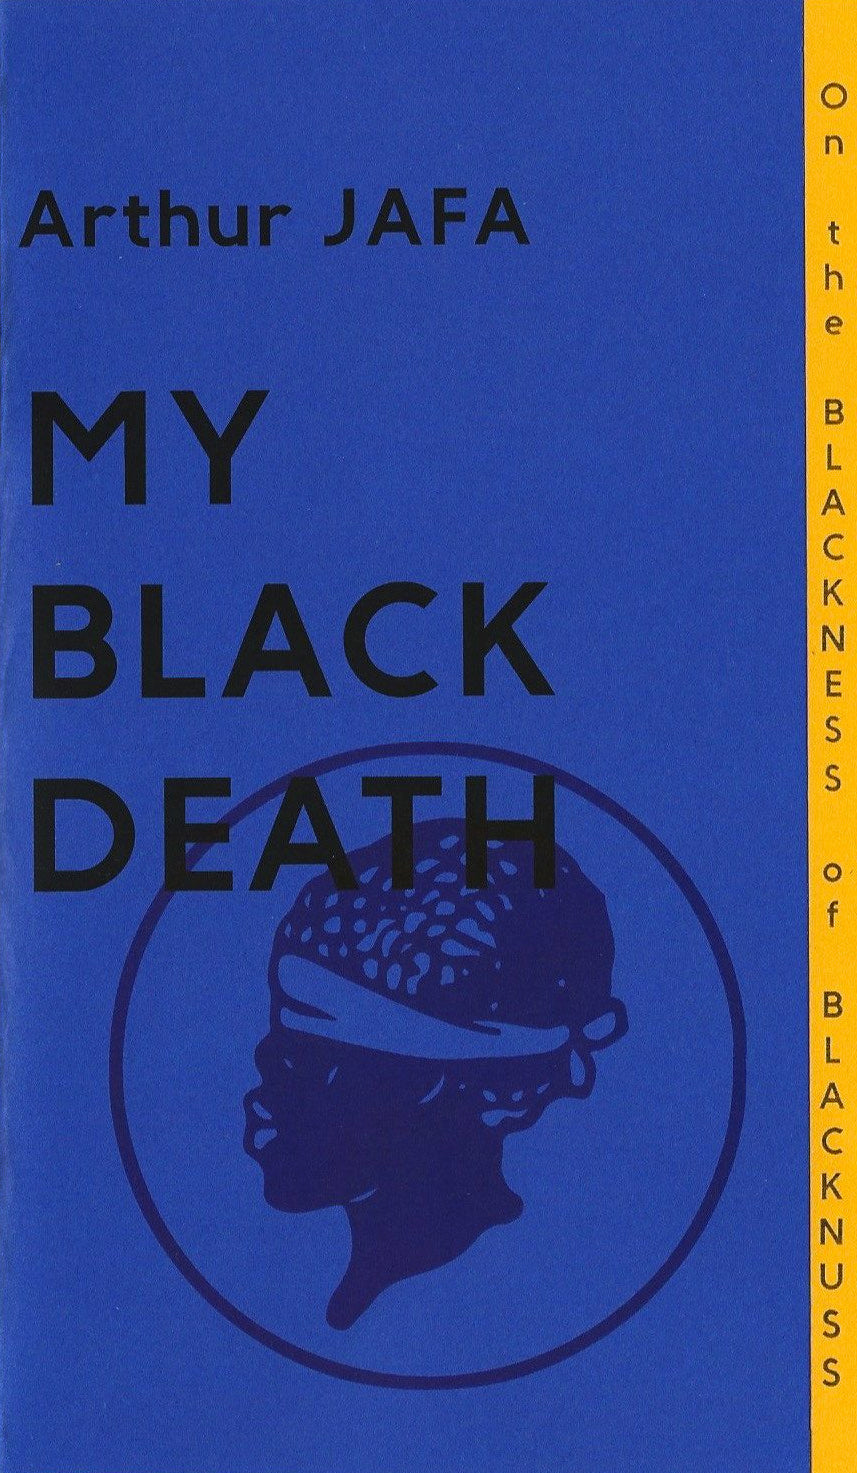 My Black Death by Arthur Jafa